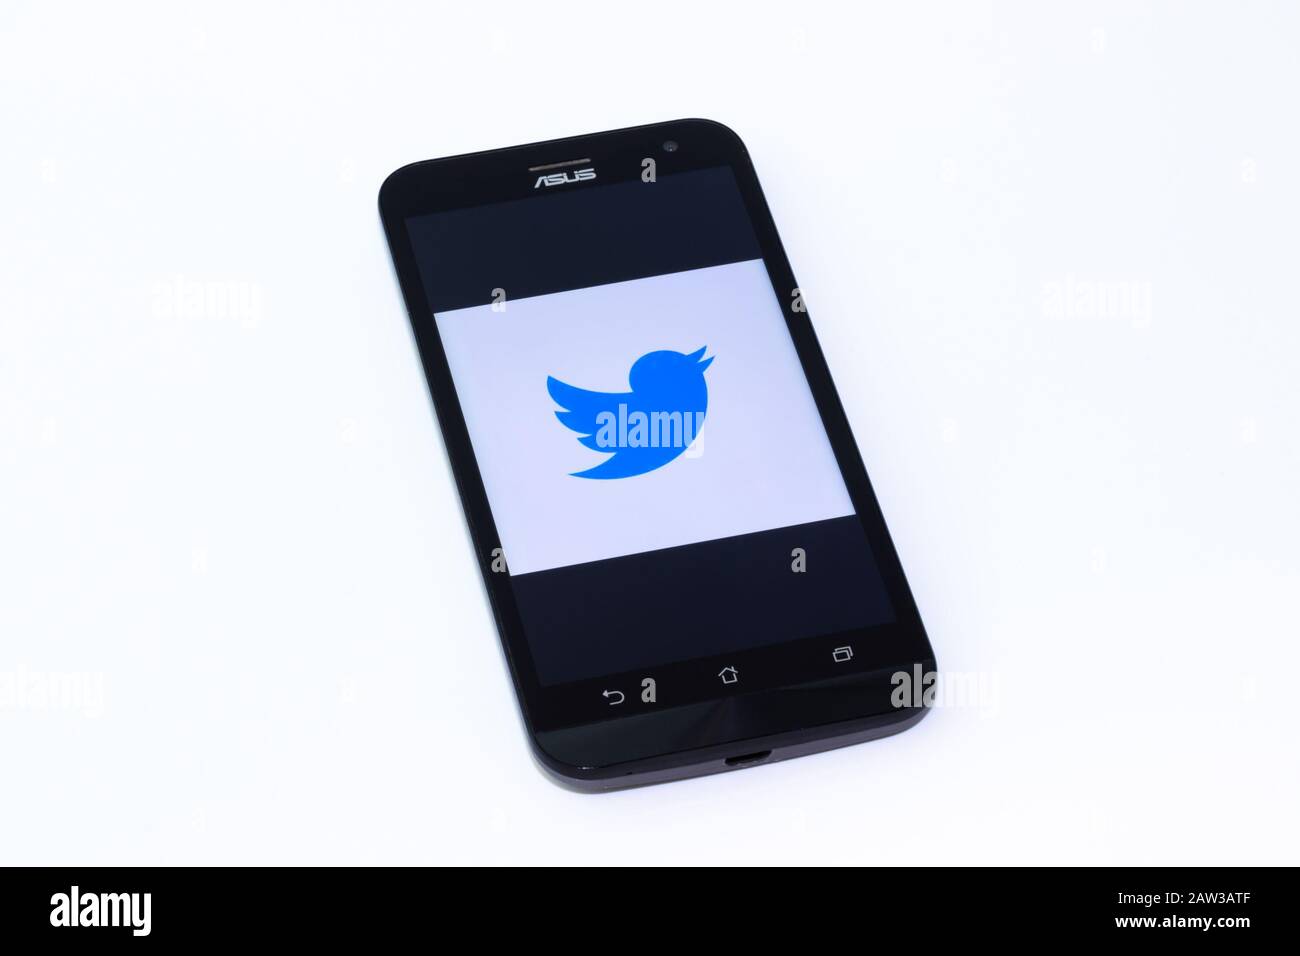 Kouvola, Finlandia - 23 gennaio 2020: Logo dell'app Twitter lite sullo schermo dello smartphone Asus Foto Stock